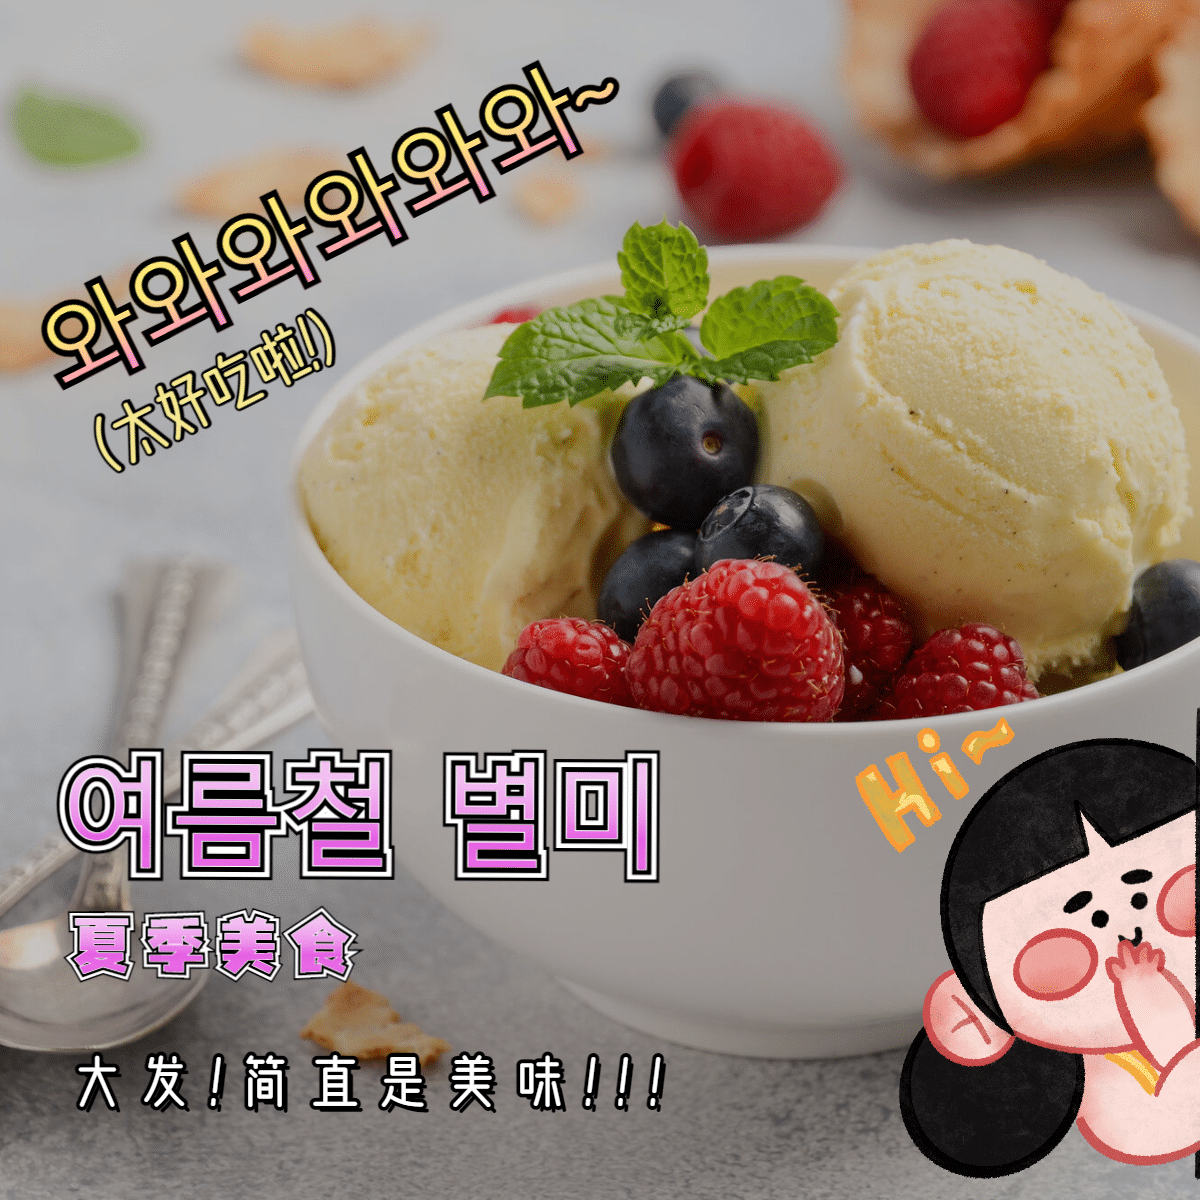 简约卡通韩语美食产品展示